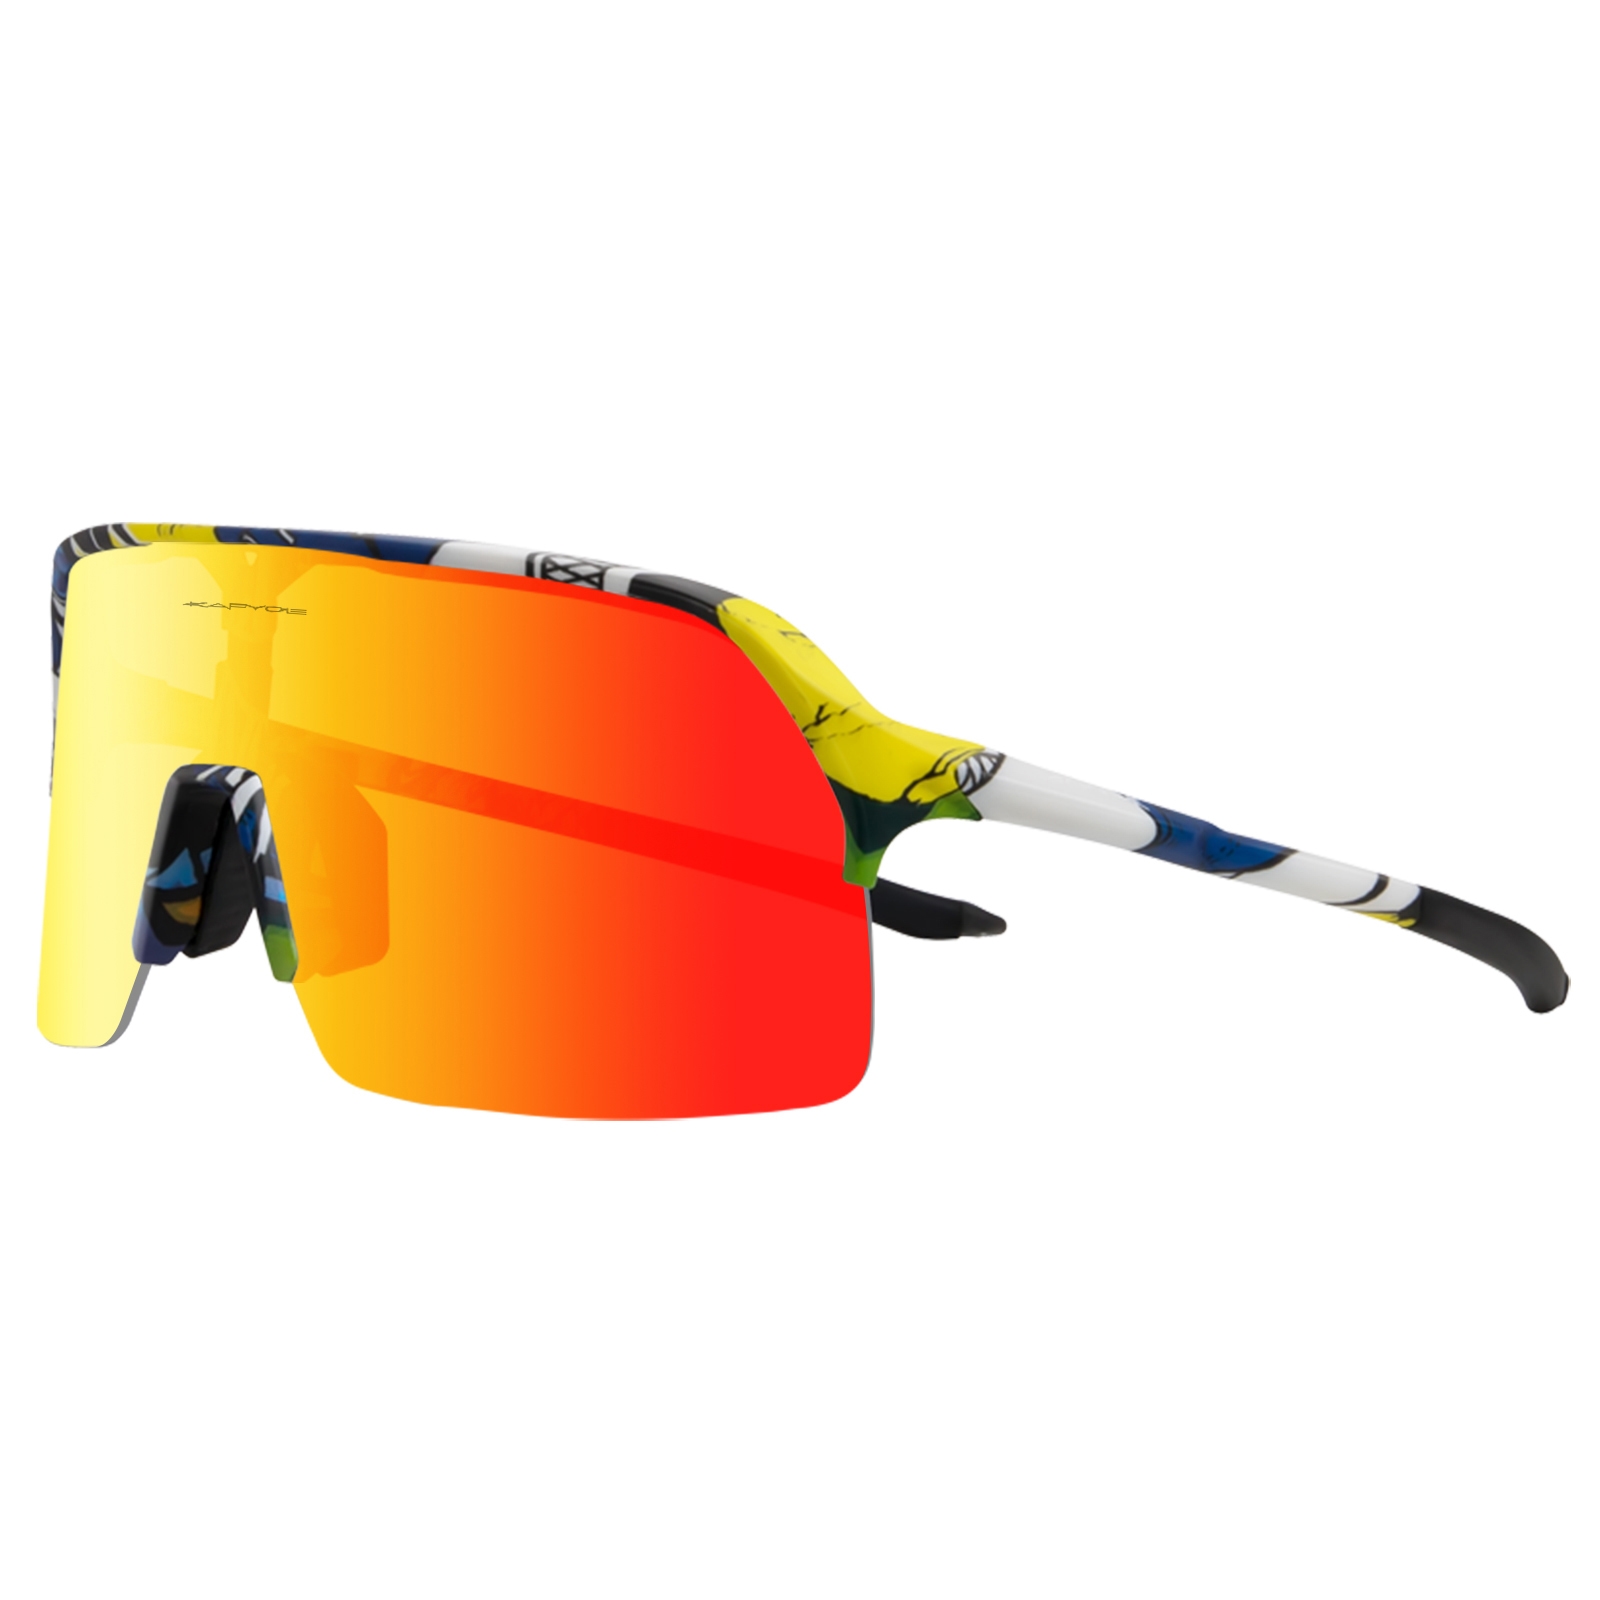 KAPVOE C40 Cykelbriller med rød linse| Køb nu!